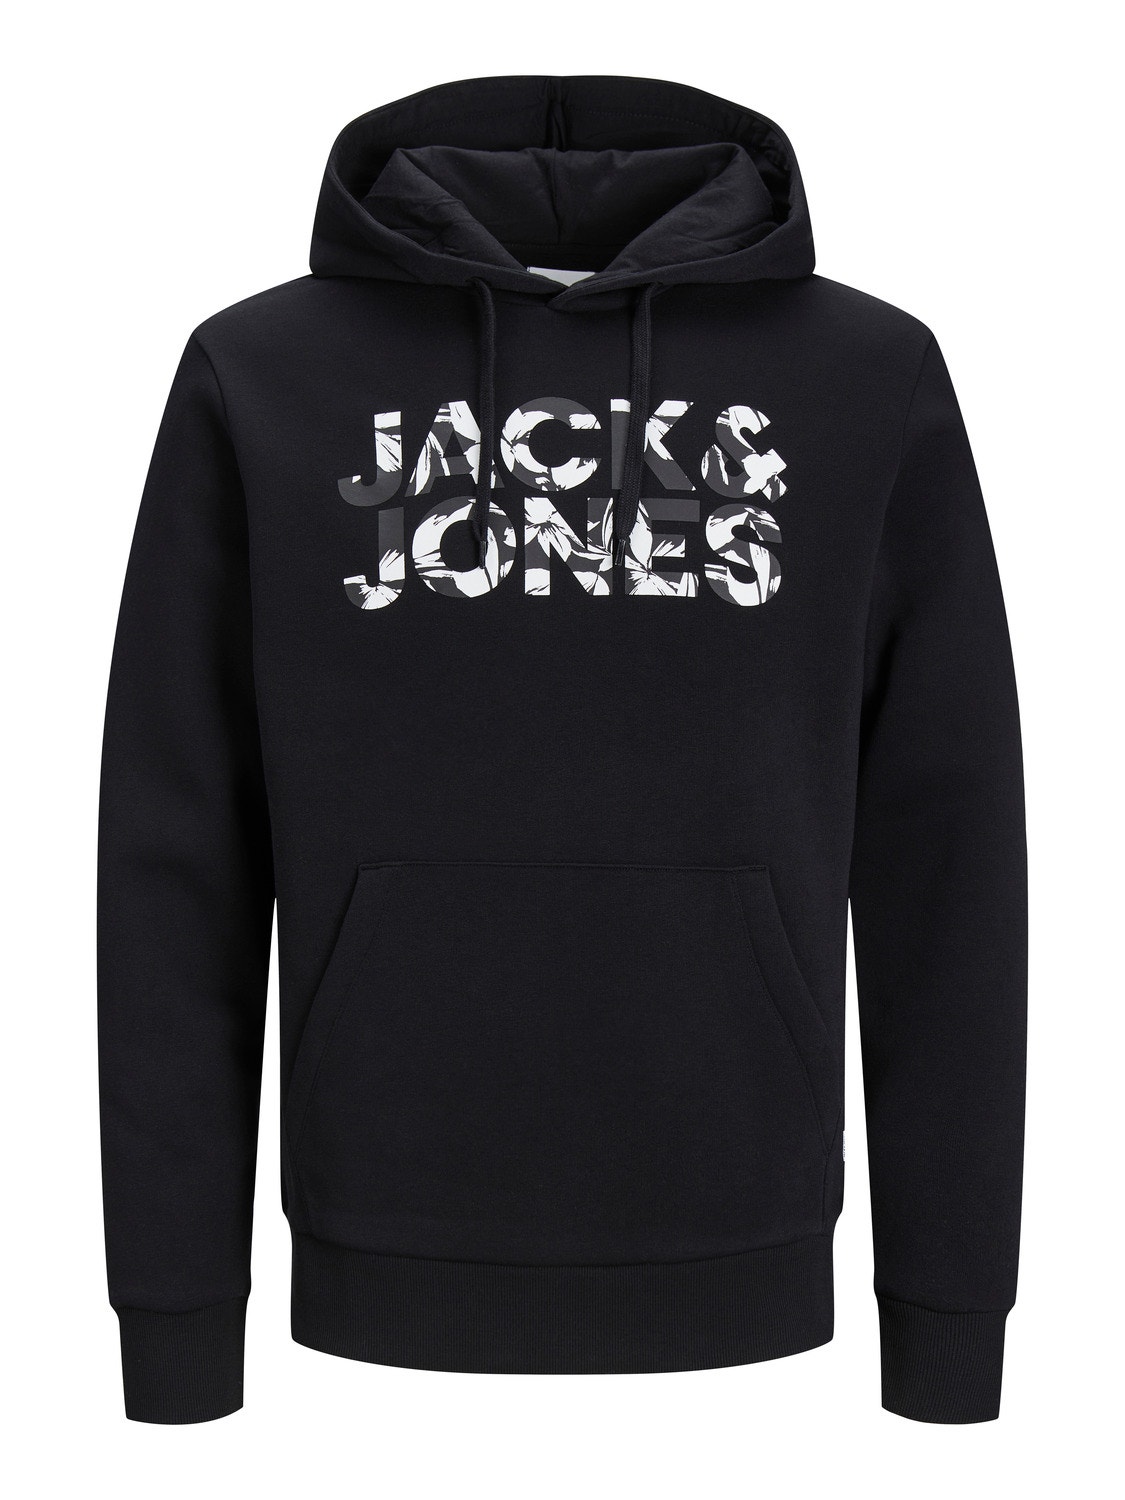 Jack & Jones Logo Hoodie -Black - 12250682